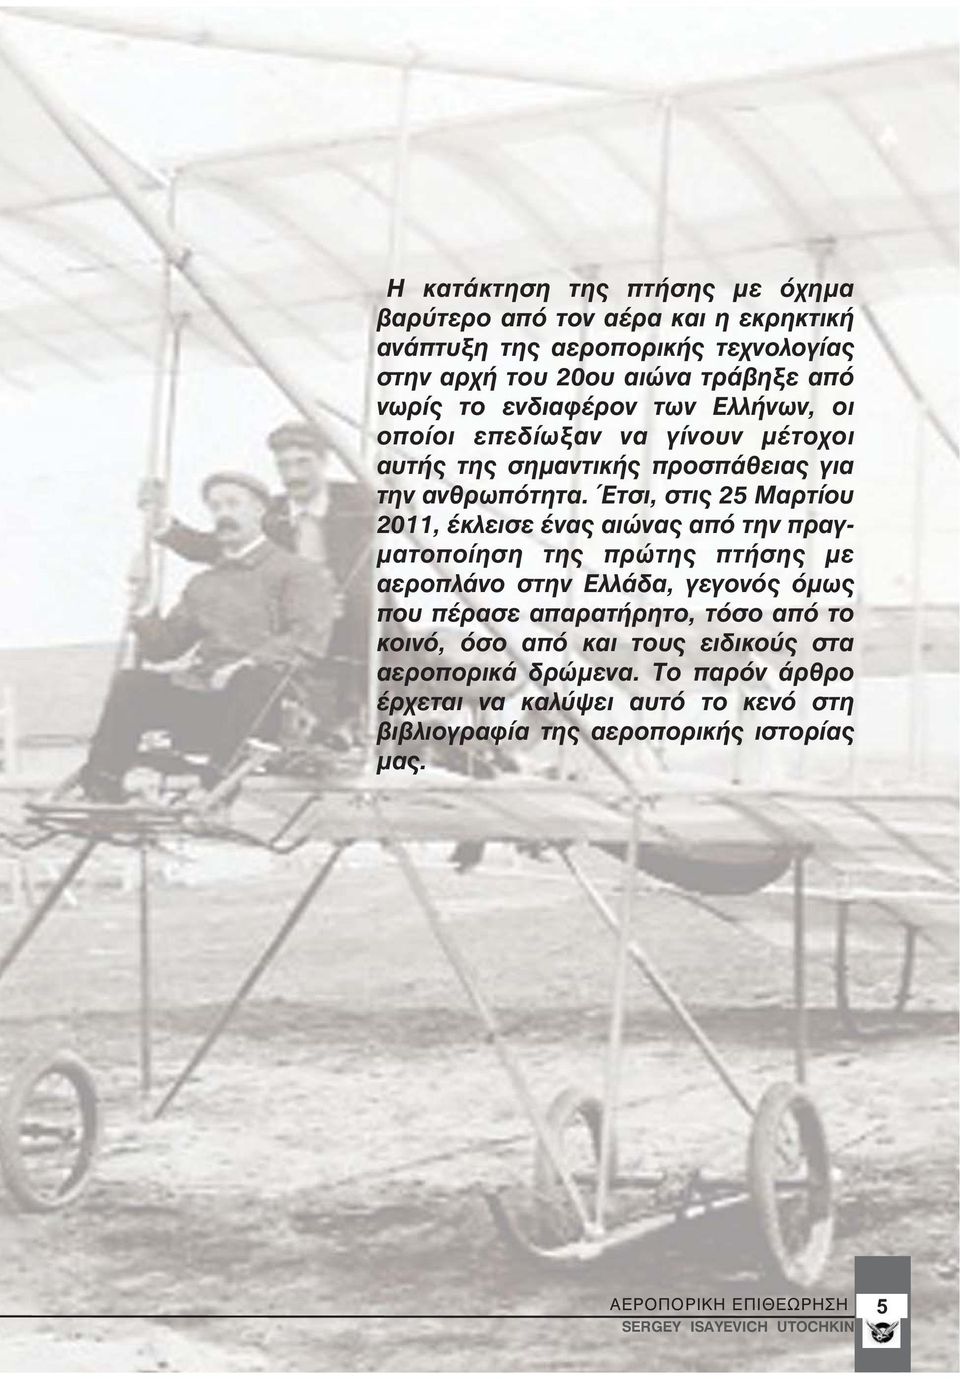 Έτσι, στις 25 Μαρτίου 2011, έκλεισε ένας αιώνας από την πραγματοποίηση της πρώτης πτήσης με αεροπλάνο στην Ελλάδα, γεγονός όμως που πέρασε απαρατήρητο, τόσο